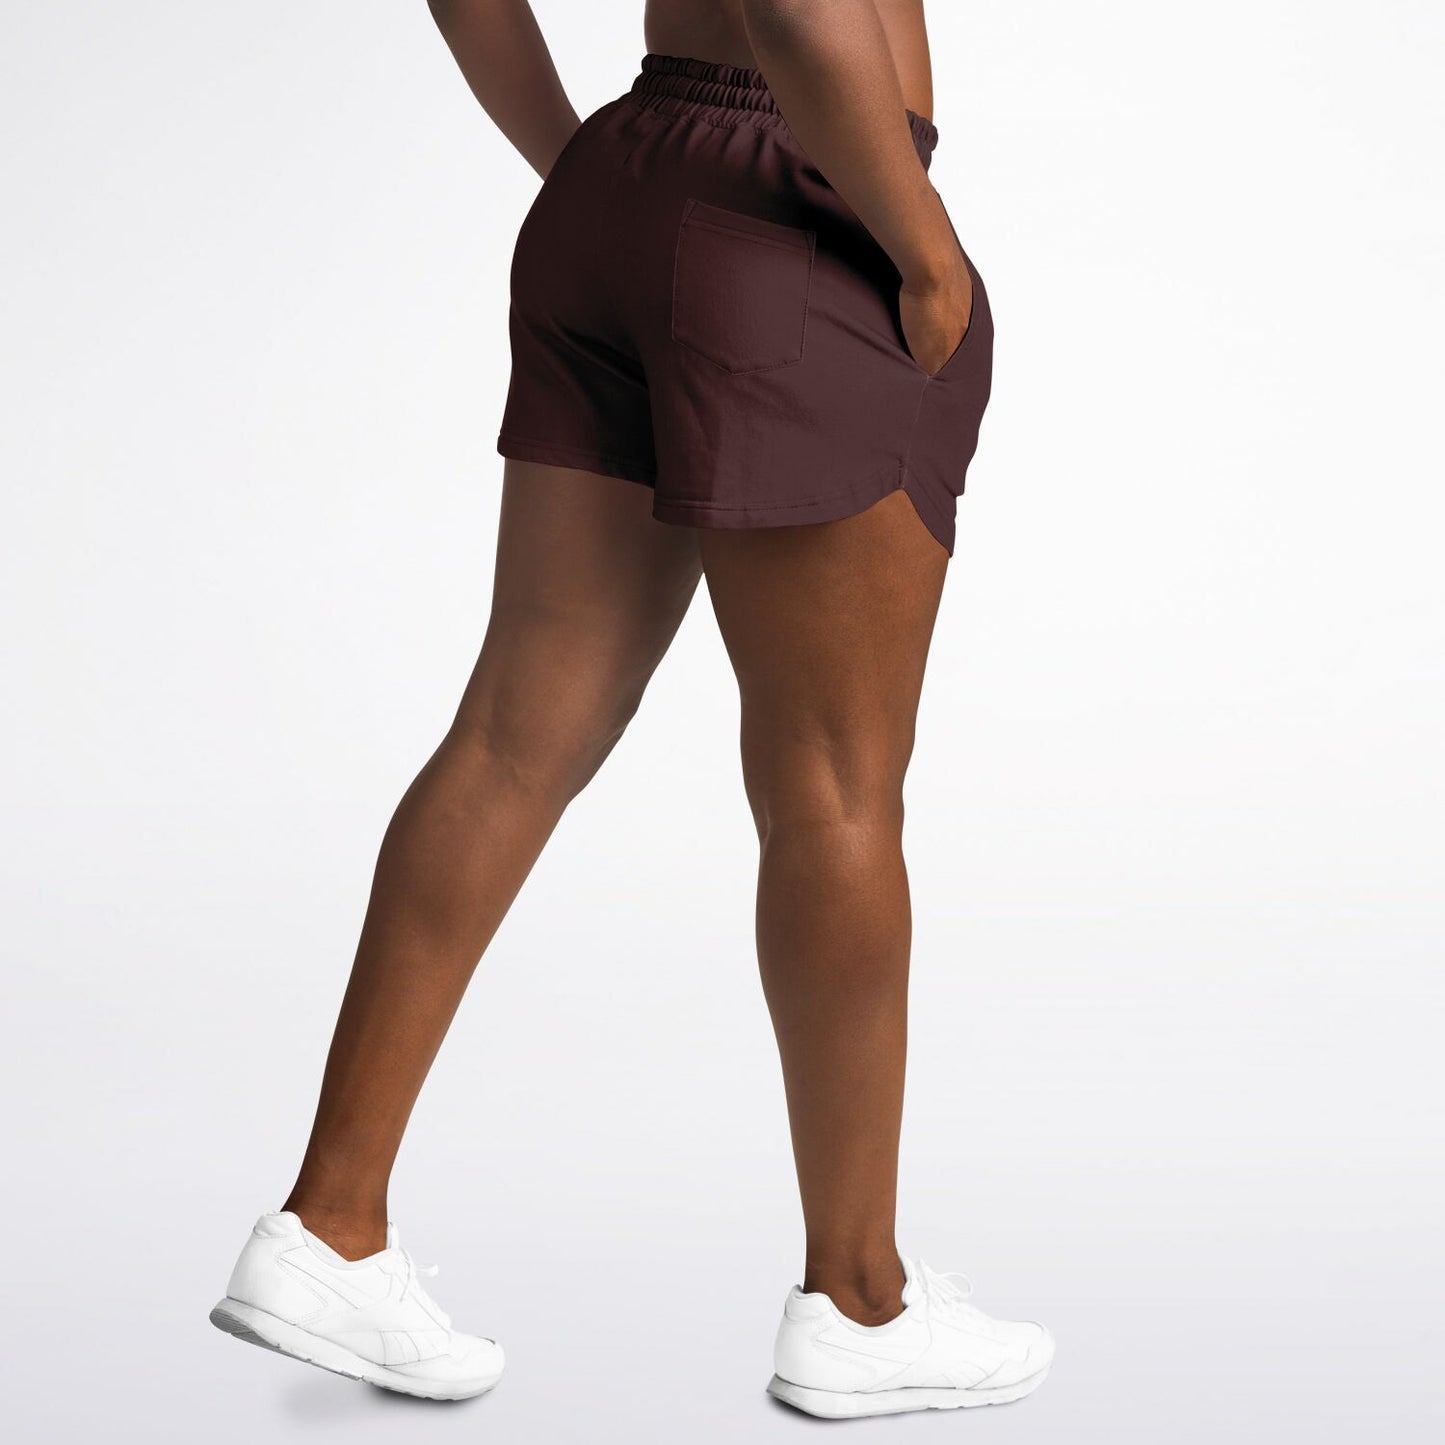 San Diego Women's Brown Shorts